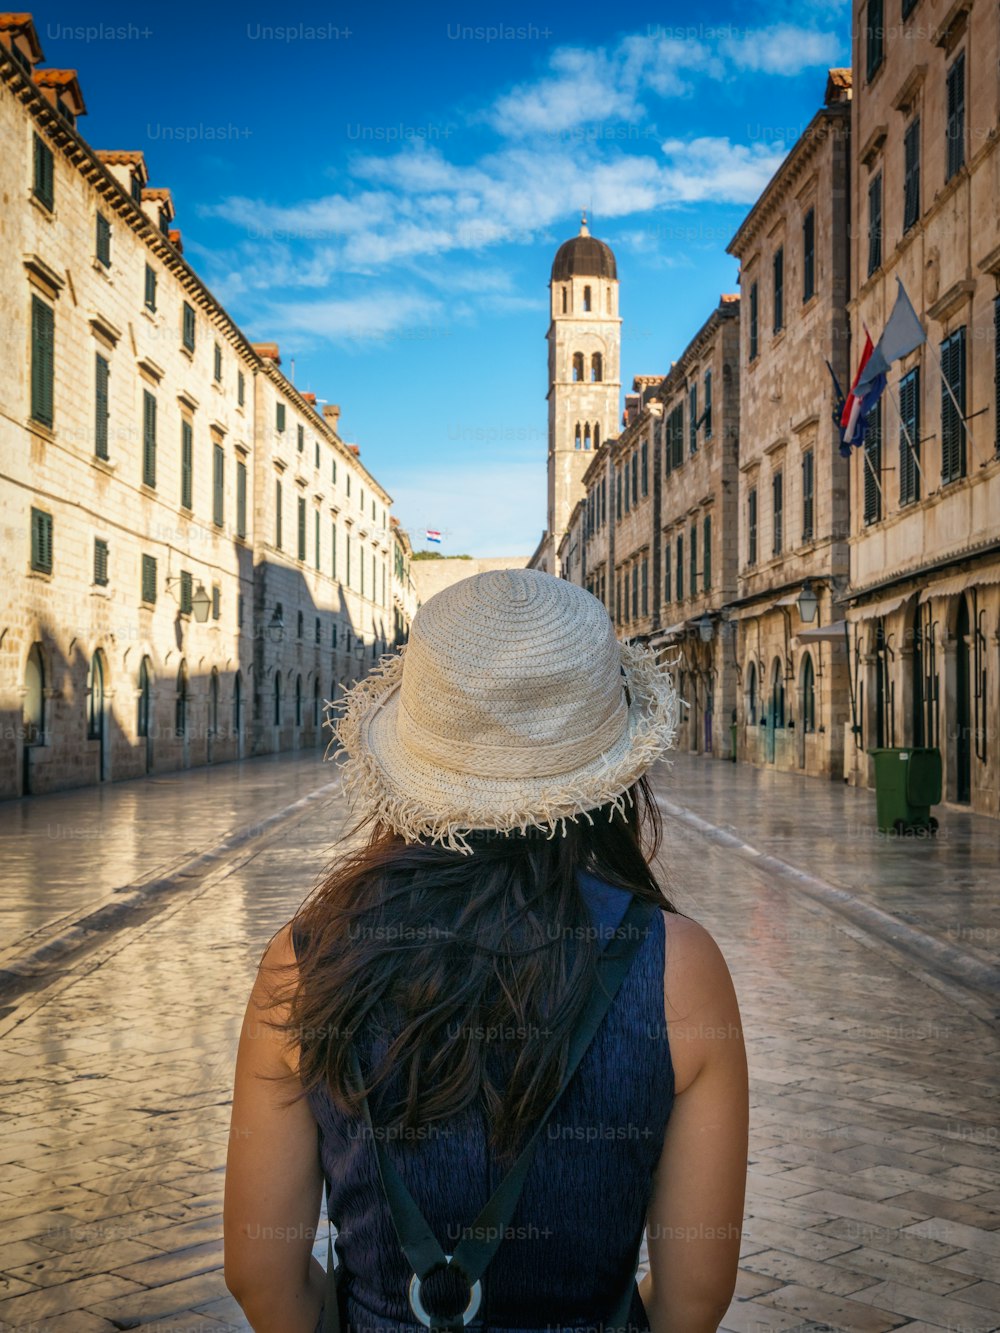 El viajero camina por la histórica calle de Stradun (Placa) en el casco antiguo de Dubrovnik en Croacia - Destacado destino turístico de Croacia. El casco antiguo de Dubrovnik fue declarado Patrimonio de la Humanidad por la UNESCO en 1979.